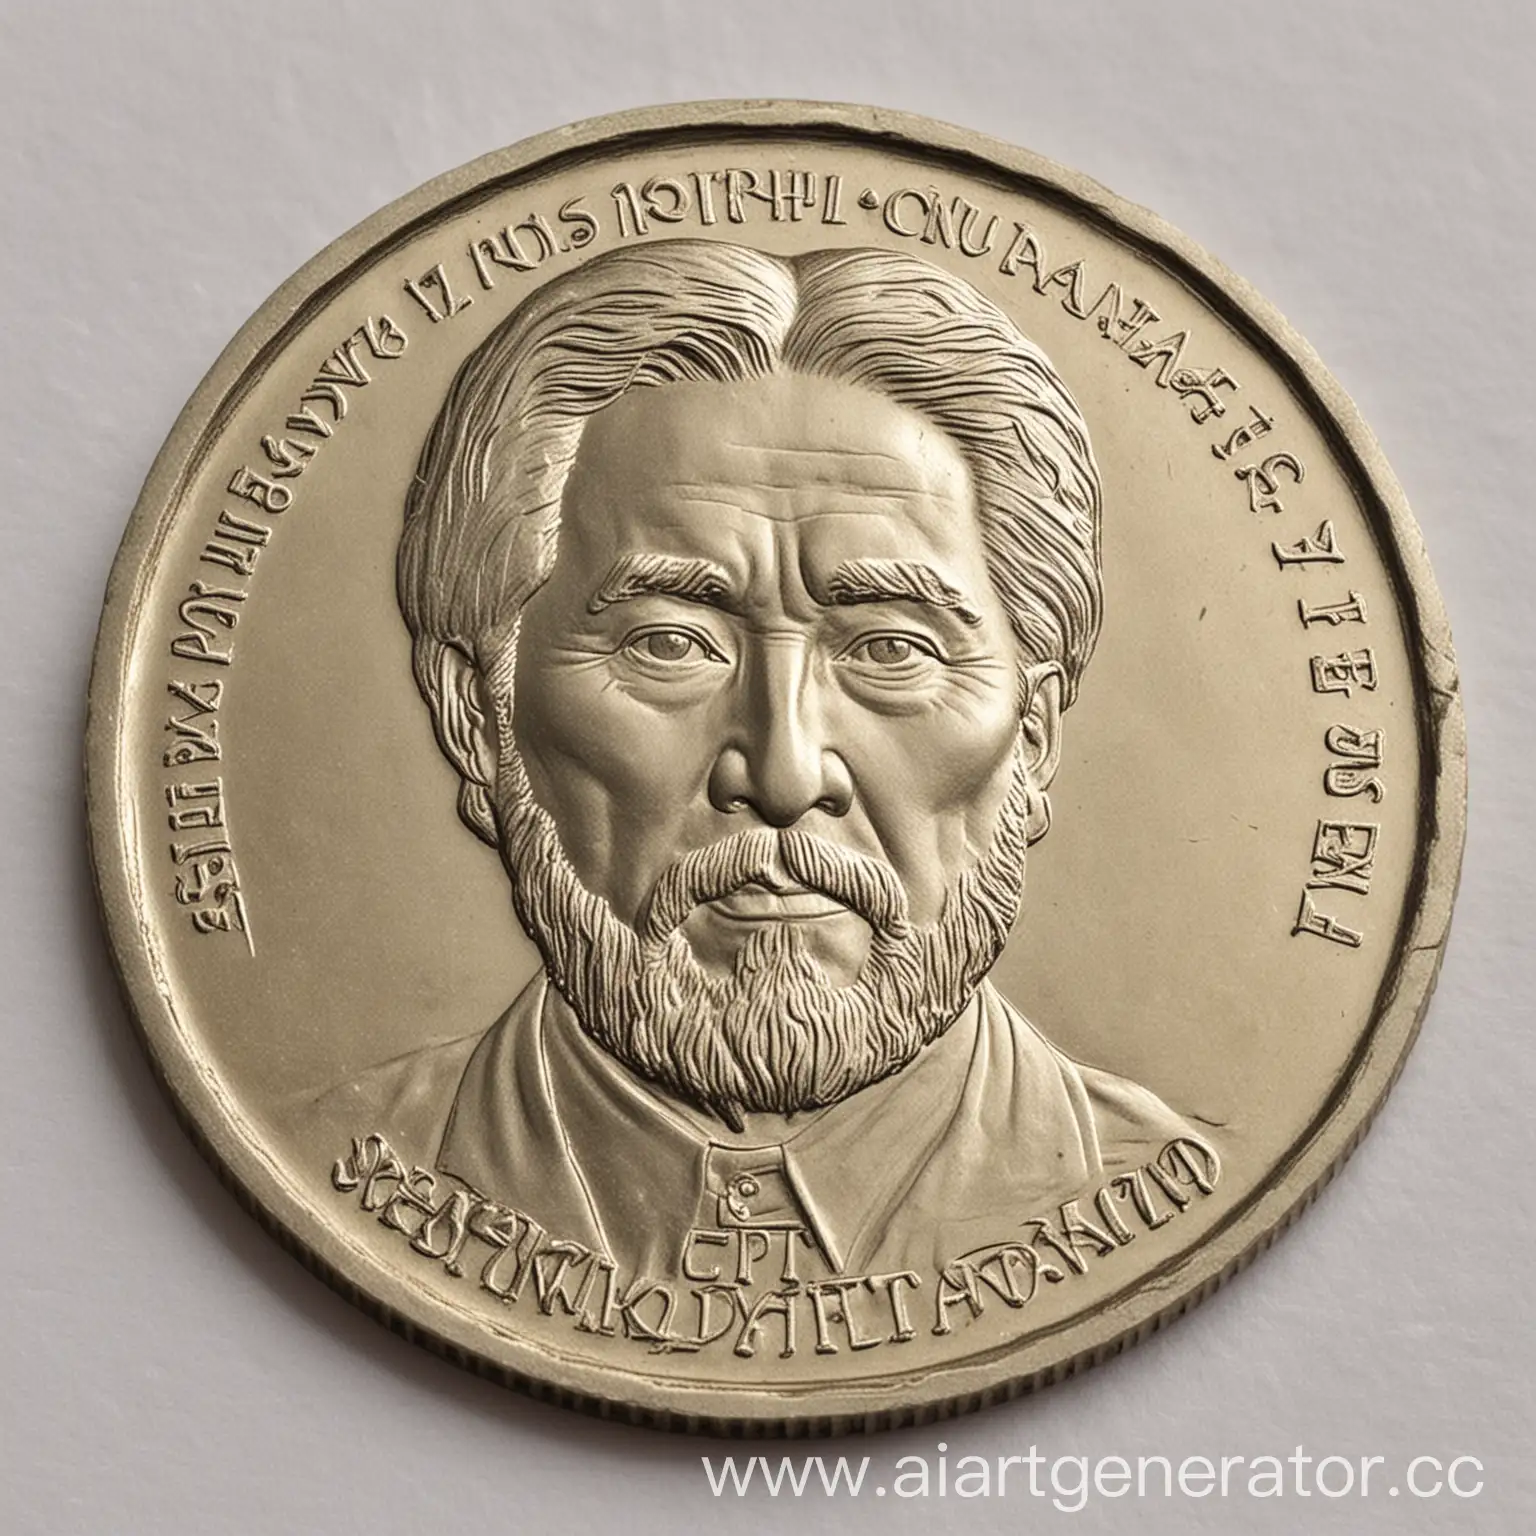 Коллекционная монета с изображением кыргызского писателя Чингиза Айтматова, которая прикреплена в изображении